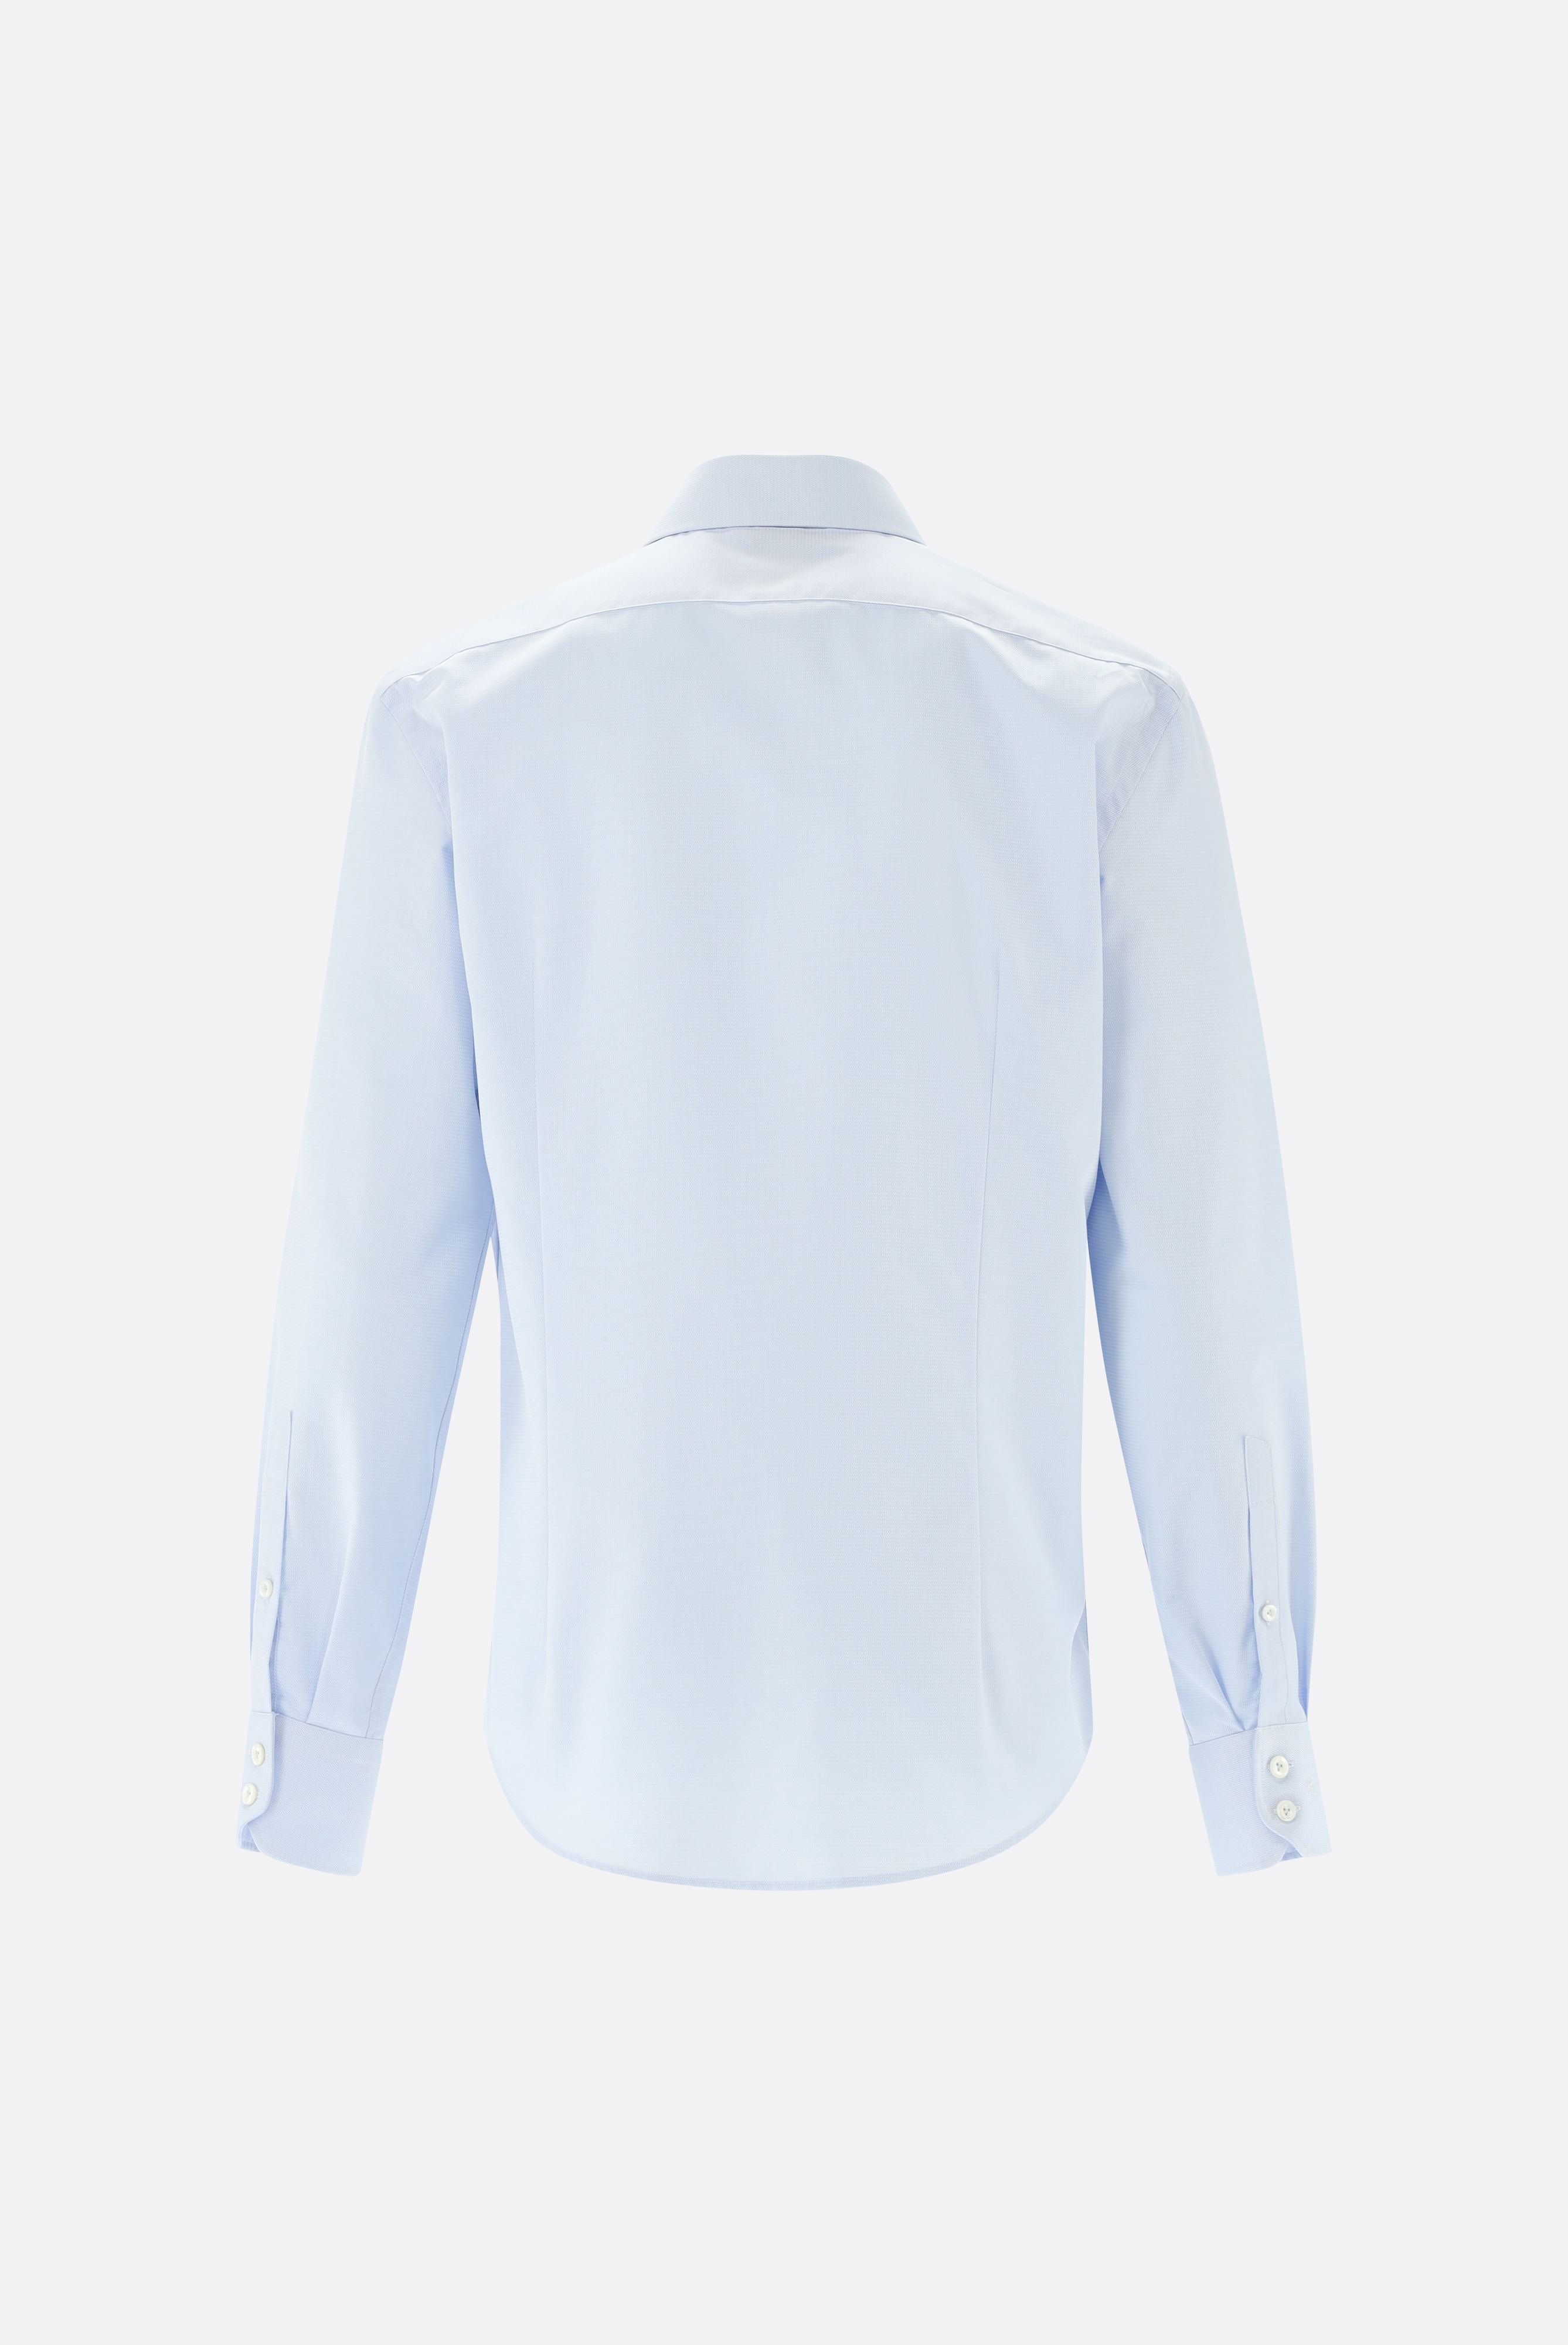 Bügelleichte Hemden+Bügelfreies Twil Hemd mit Struktur Tailor Fit+20.2020.BQ.150301.720.38